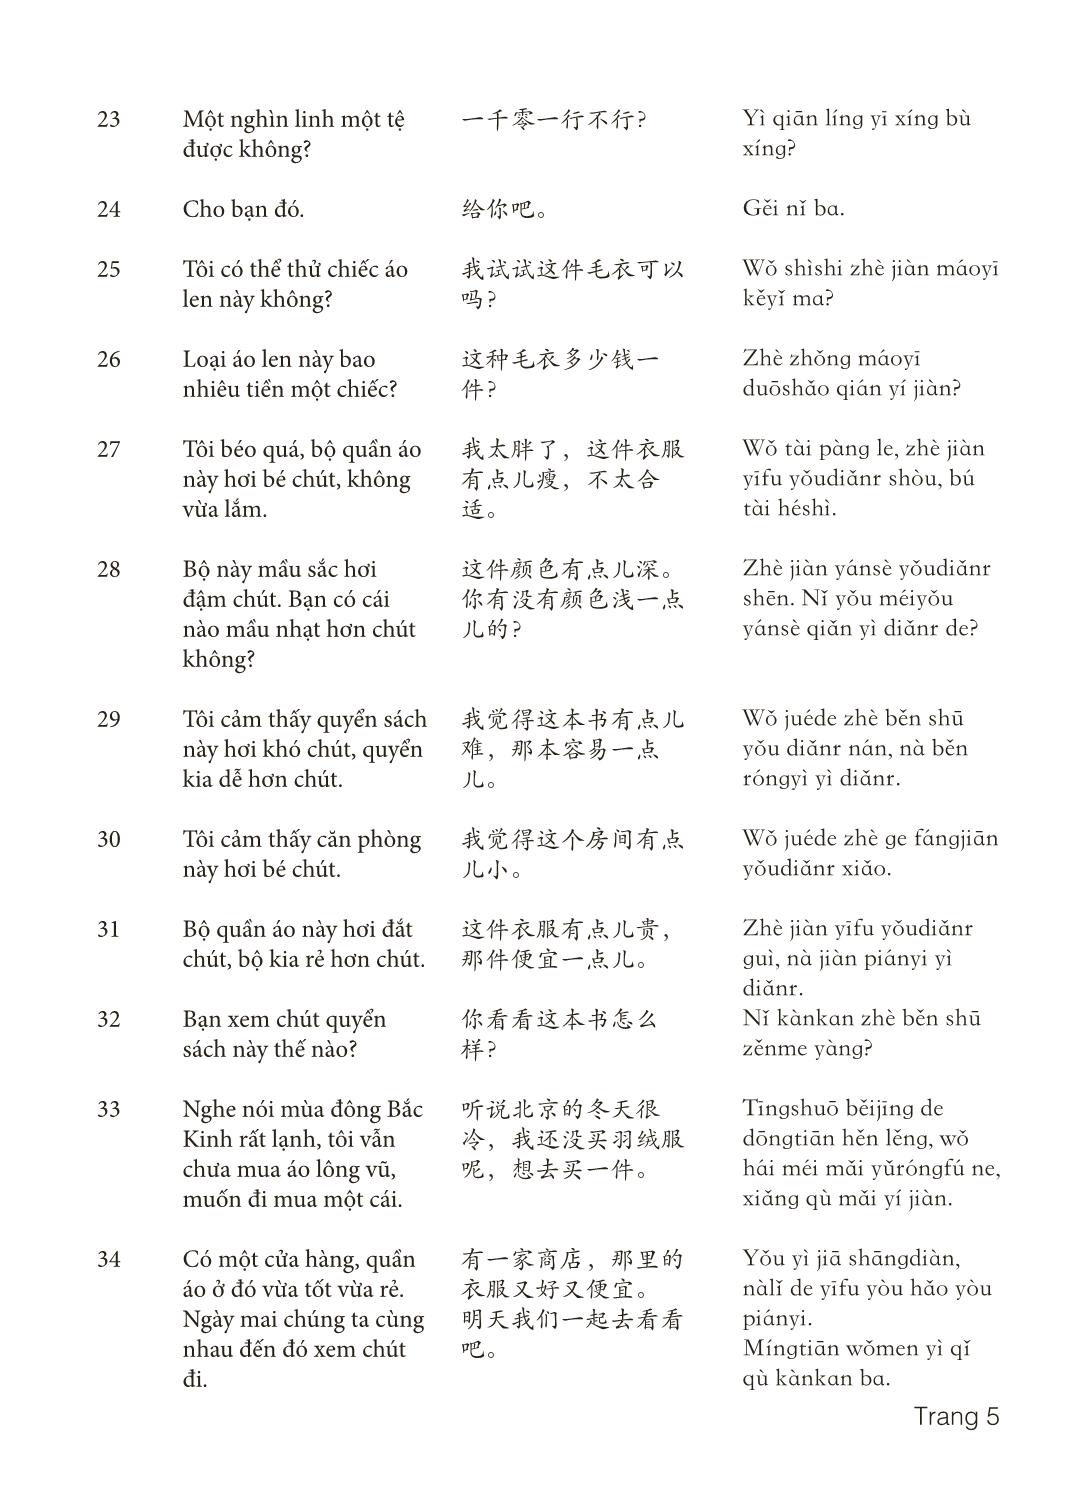 3000 Câu đàm thoại tiếng Hoa - Phần 5 trang 5